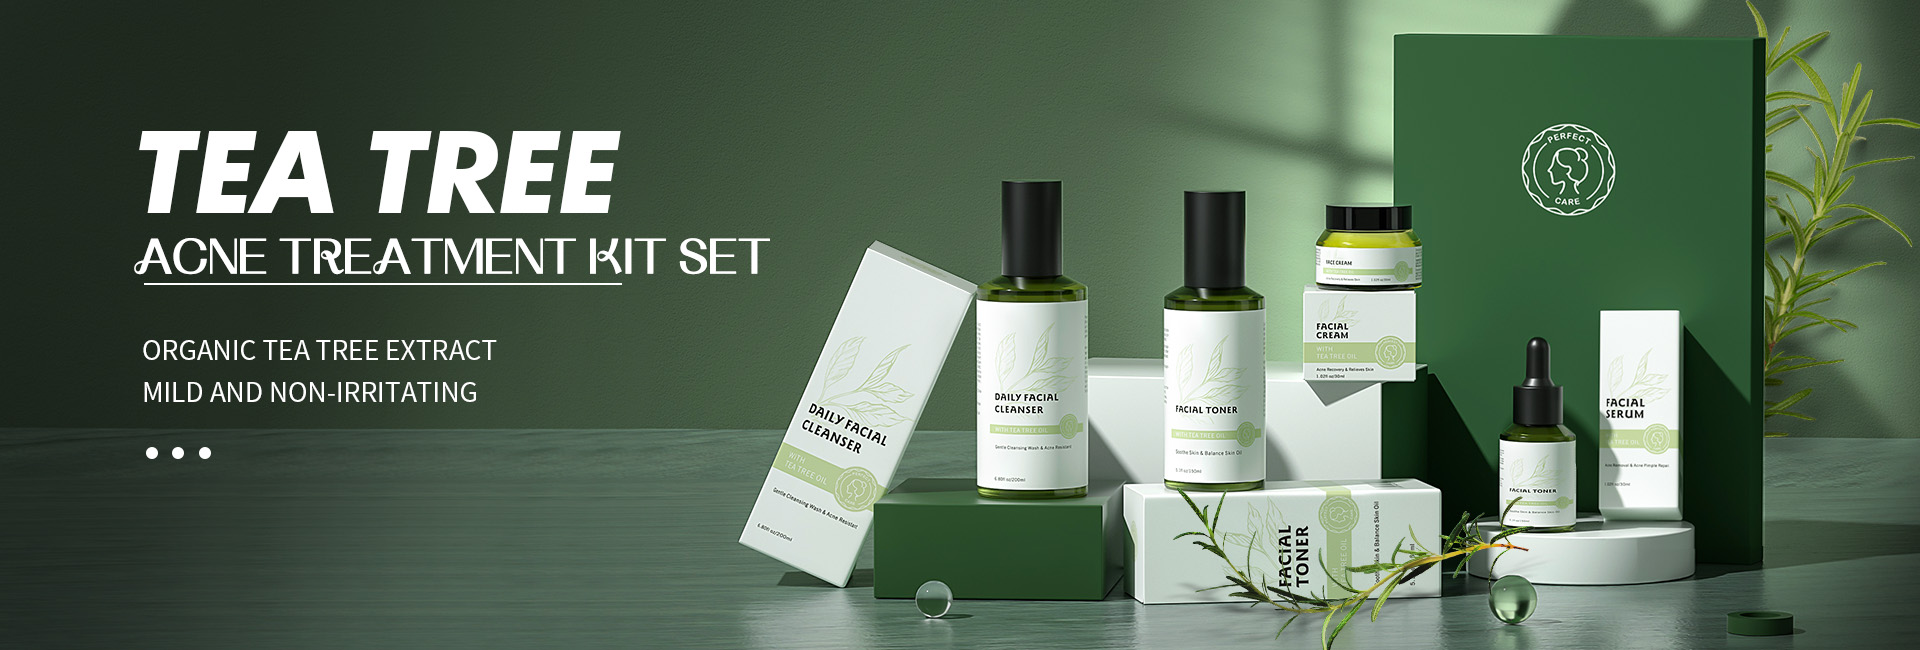 tea tree acne treatment kit set